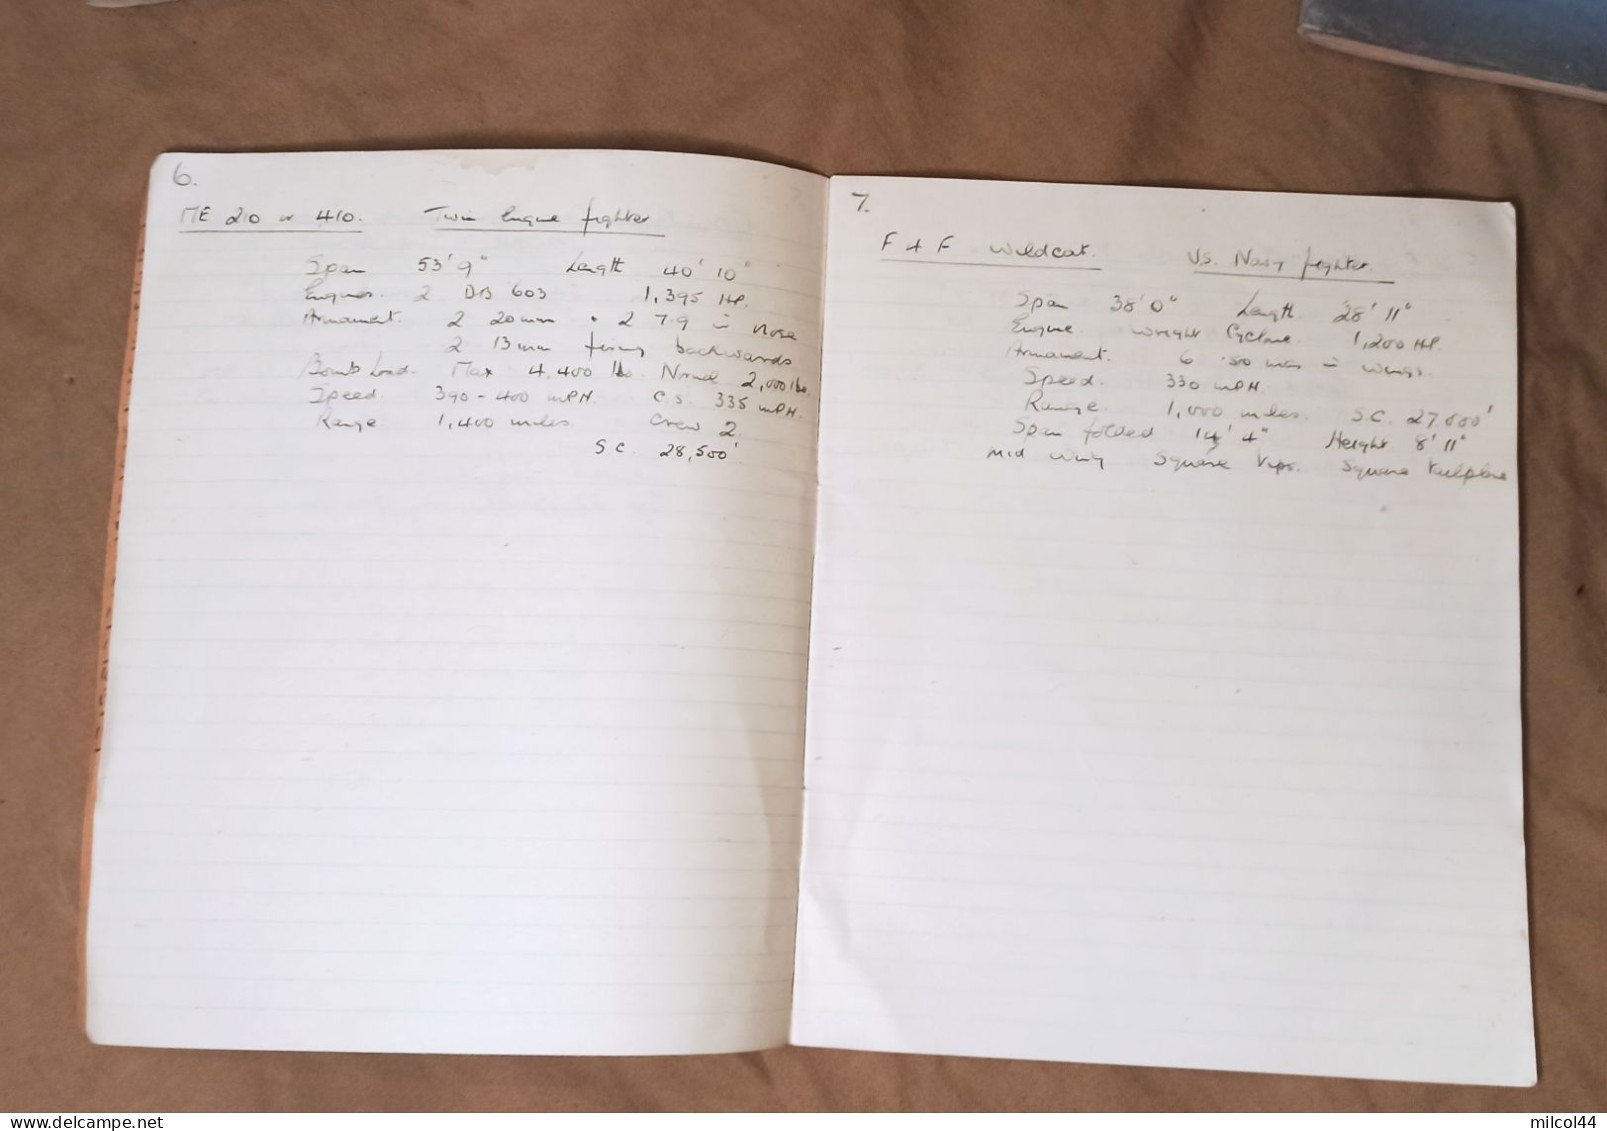 GB WW2 - Lot de documents d'un artilleur de la DCA